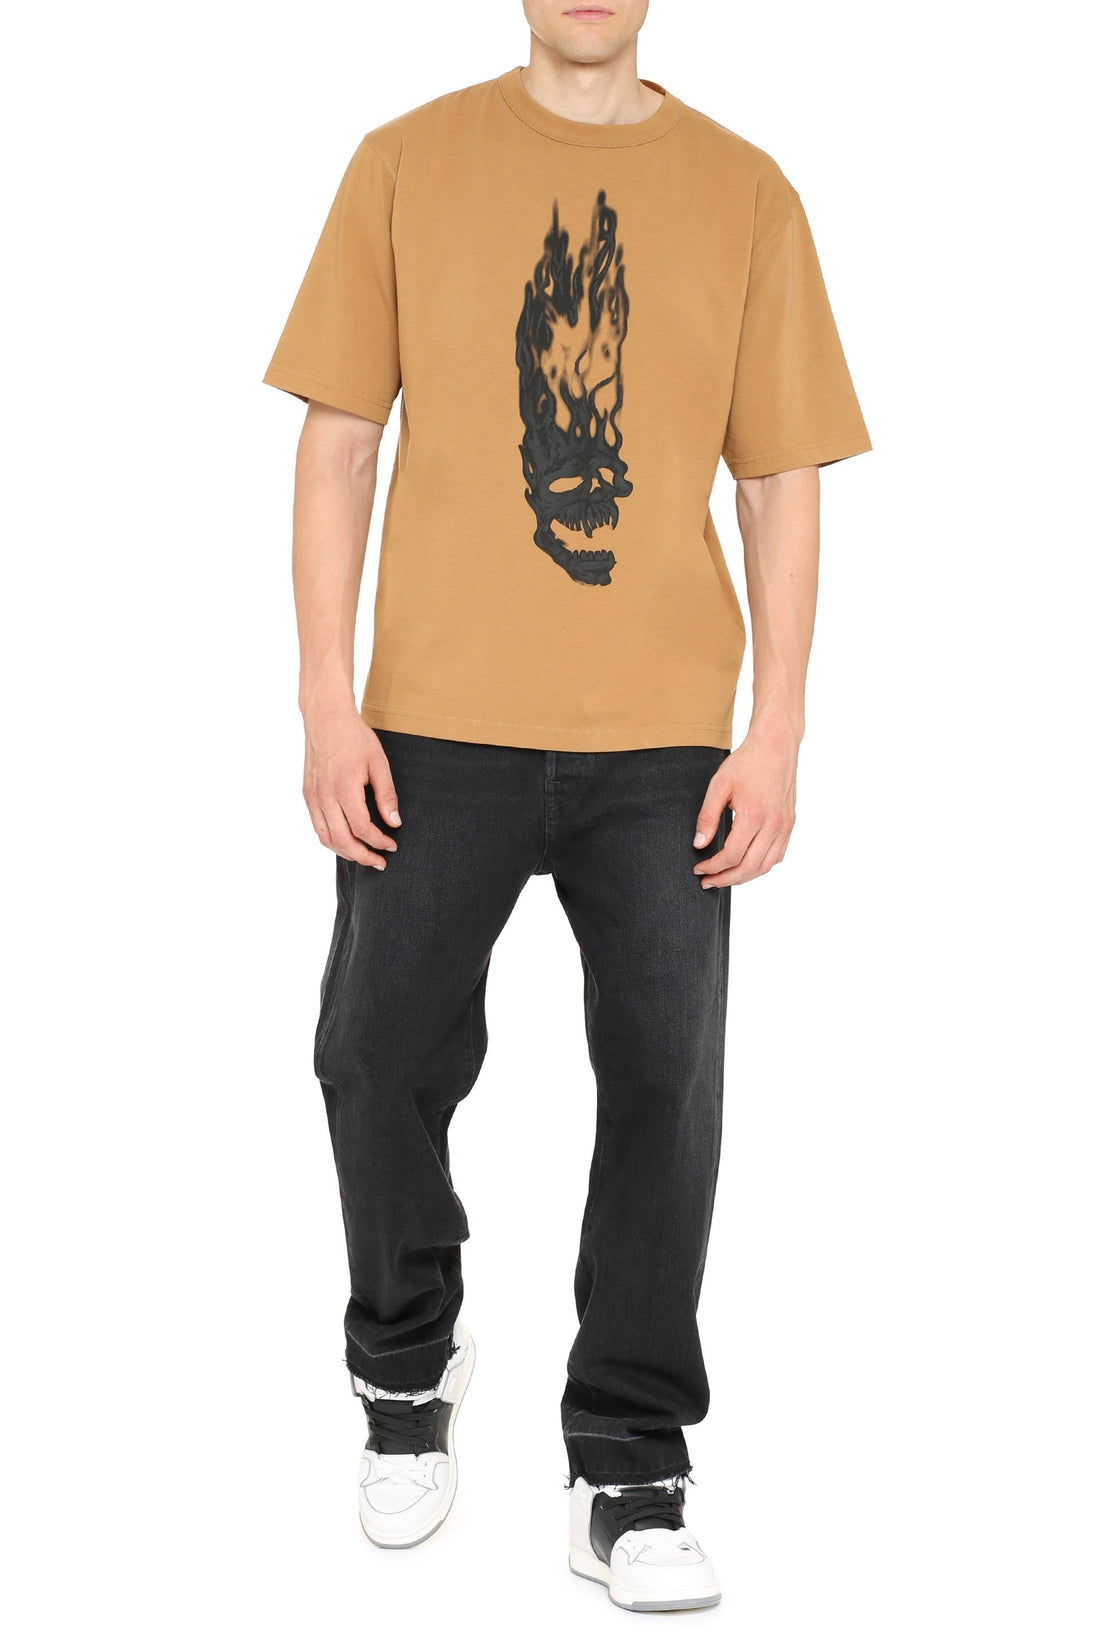 Heron Preston-OUTLET-SALE-Printed cotton T-shirt-ARCHIVIST